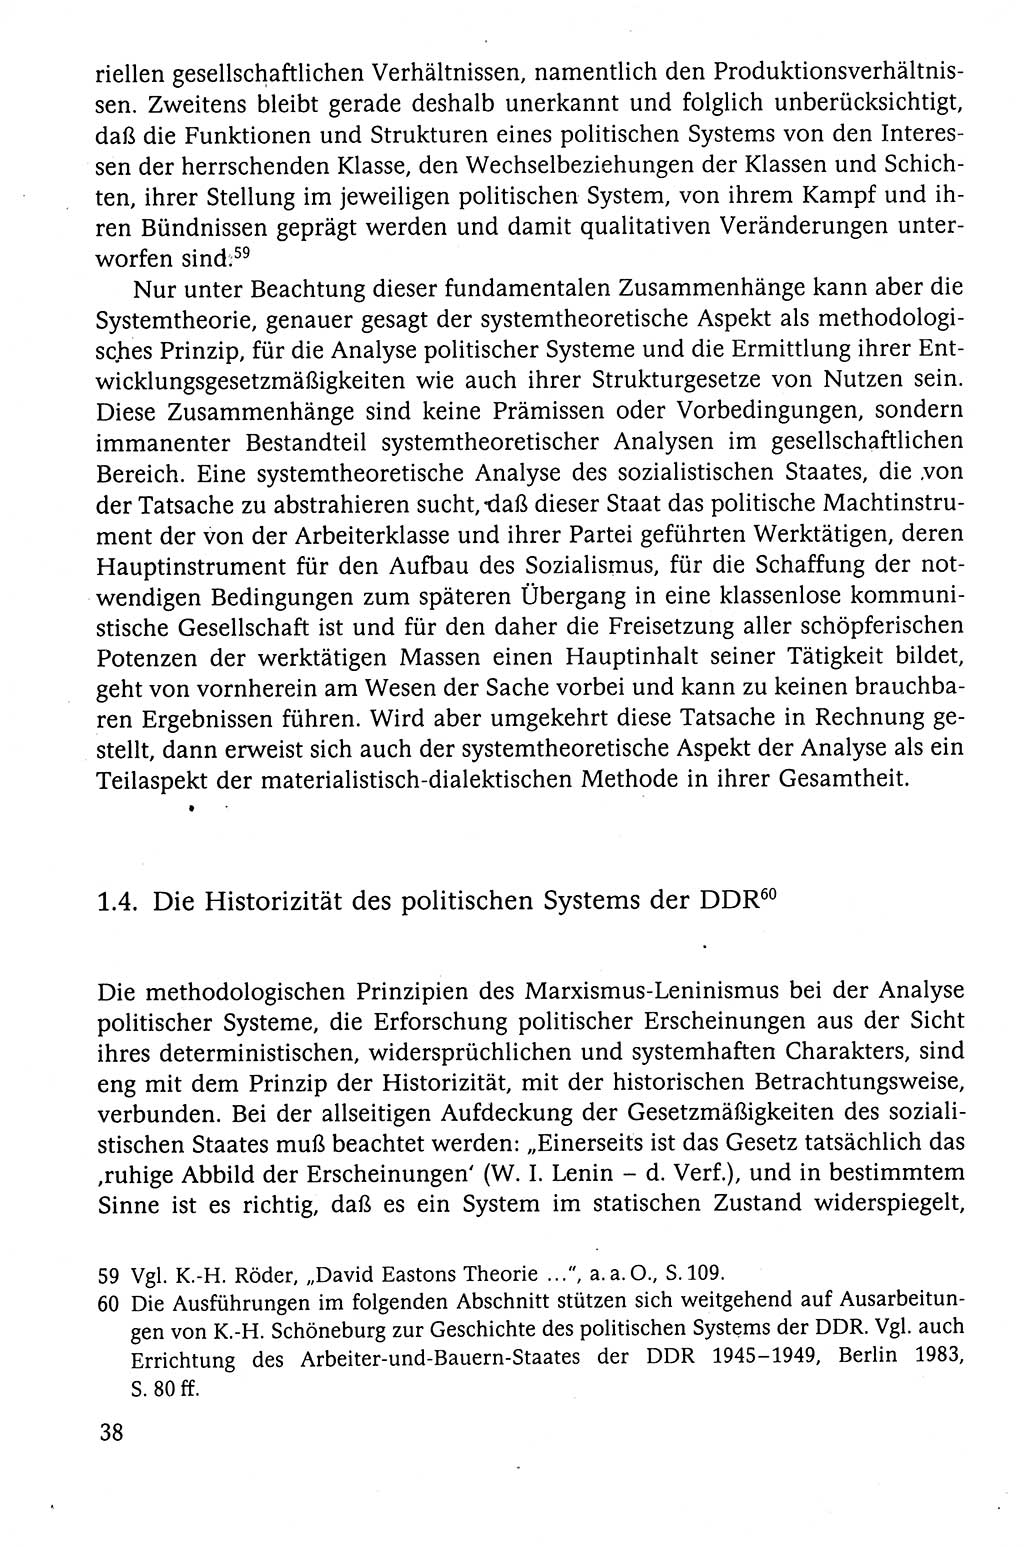 Der Staat im politischen System der DDR (Deutsche Demokratische Republik) 1986, Seite 38 (St. pol. Sys. DDR 1986, S. 38)